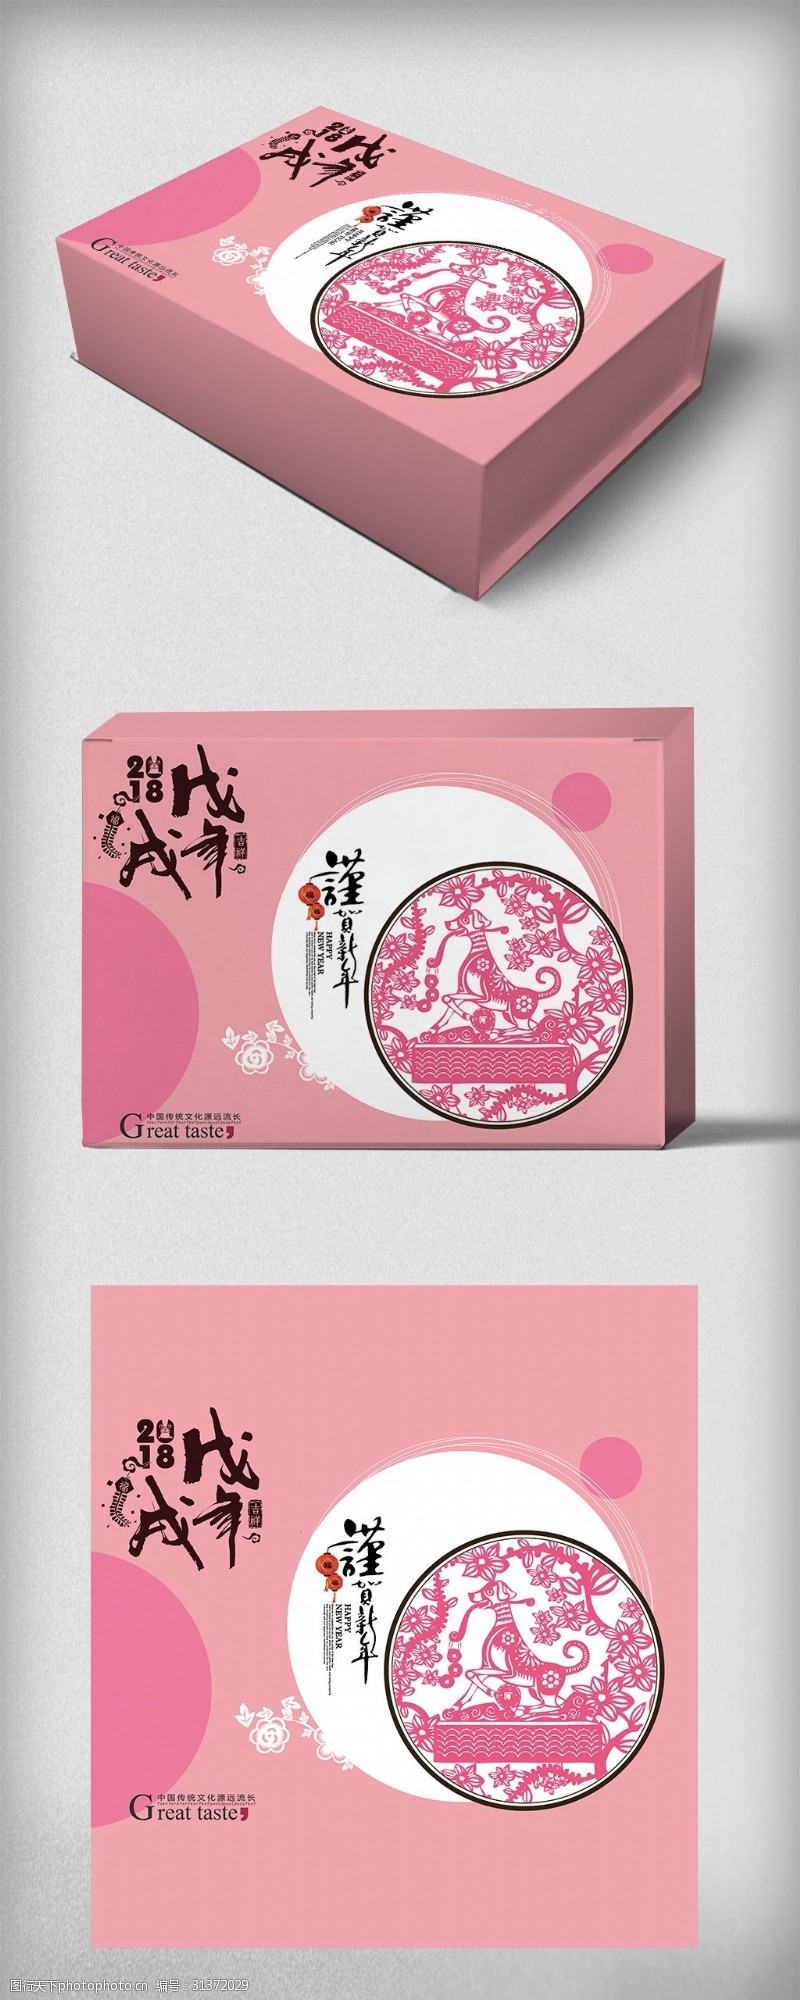 简约粉色背景新年送礼礼盒包装设计